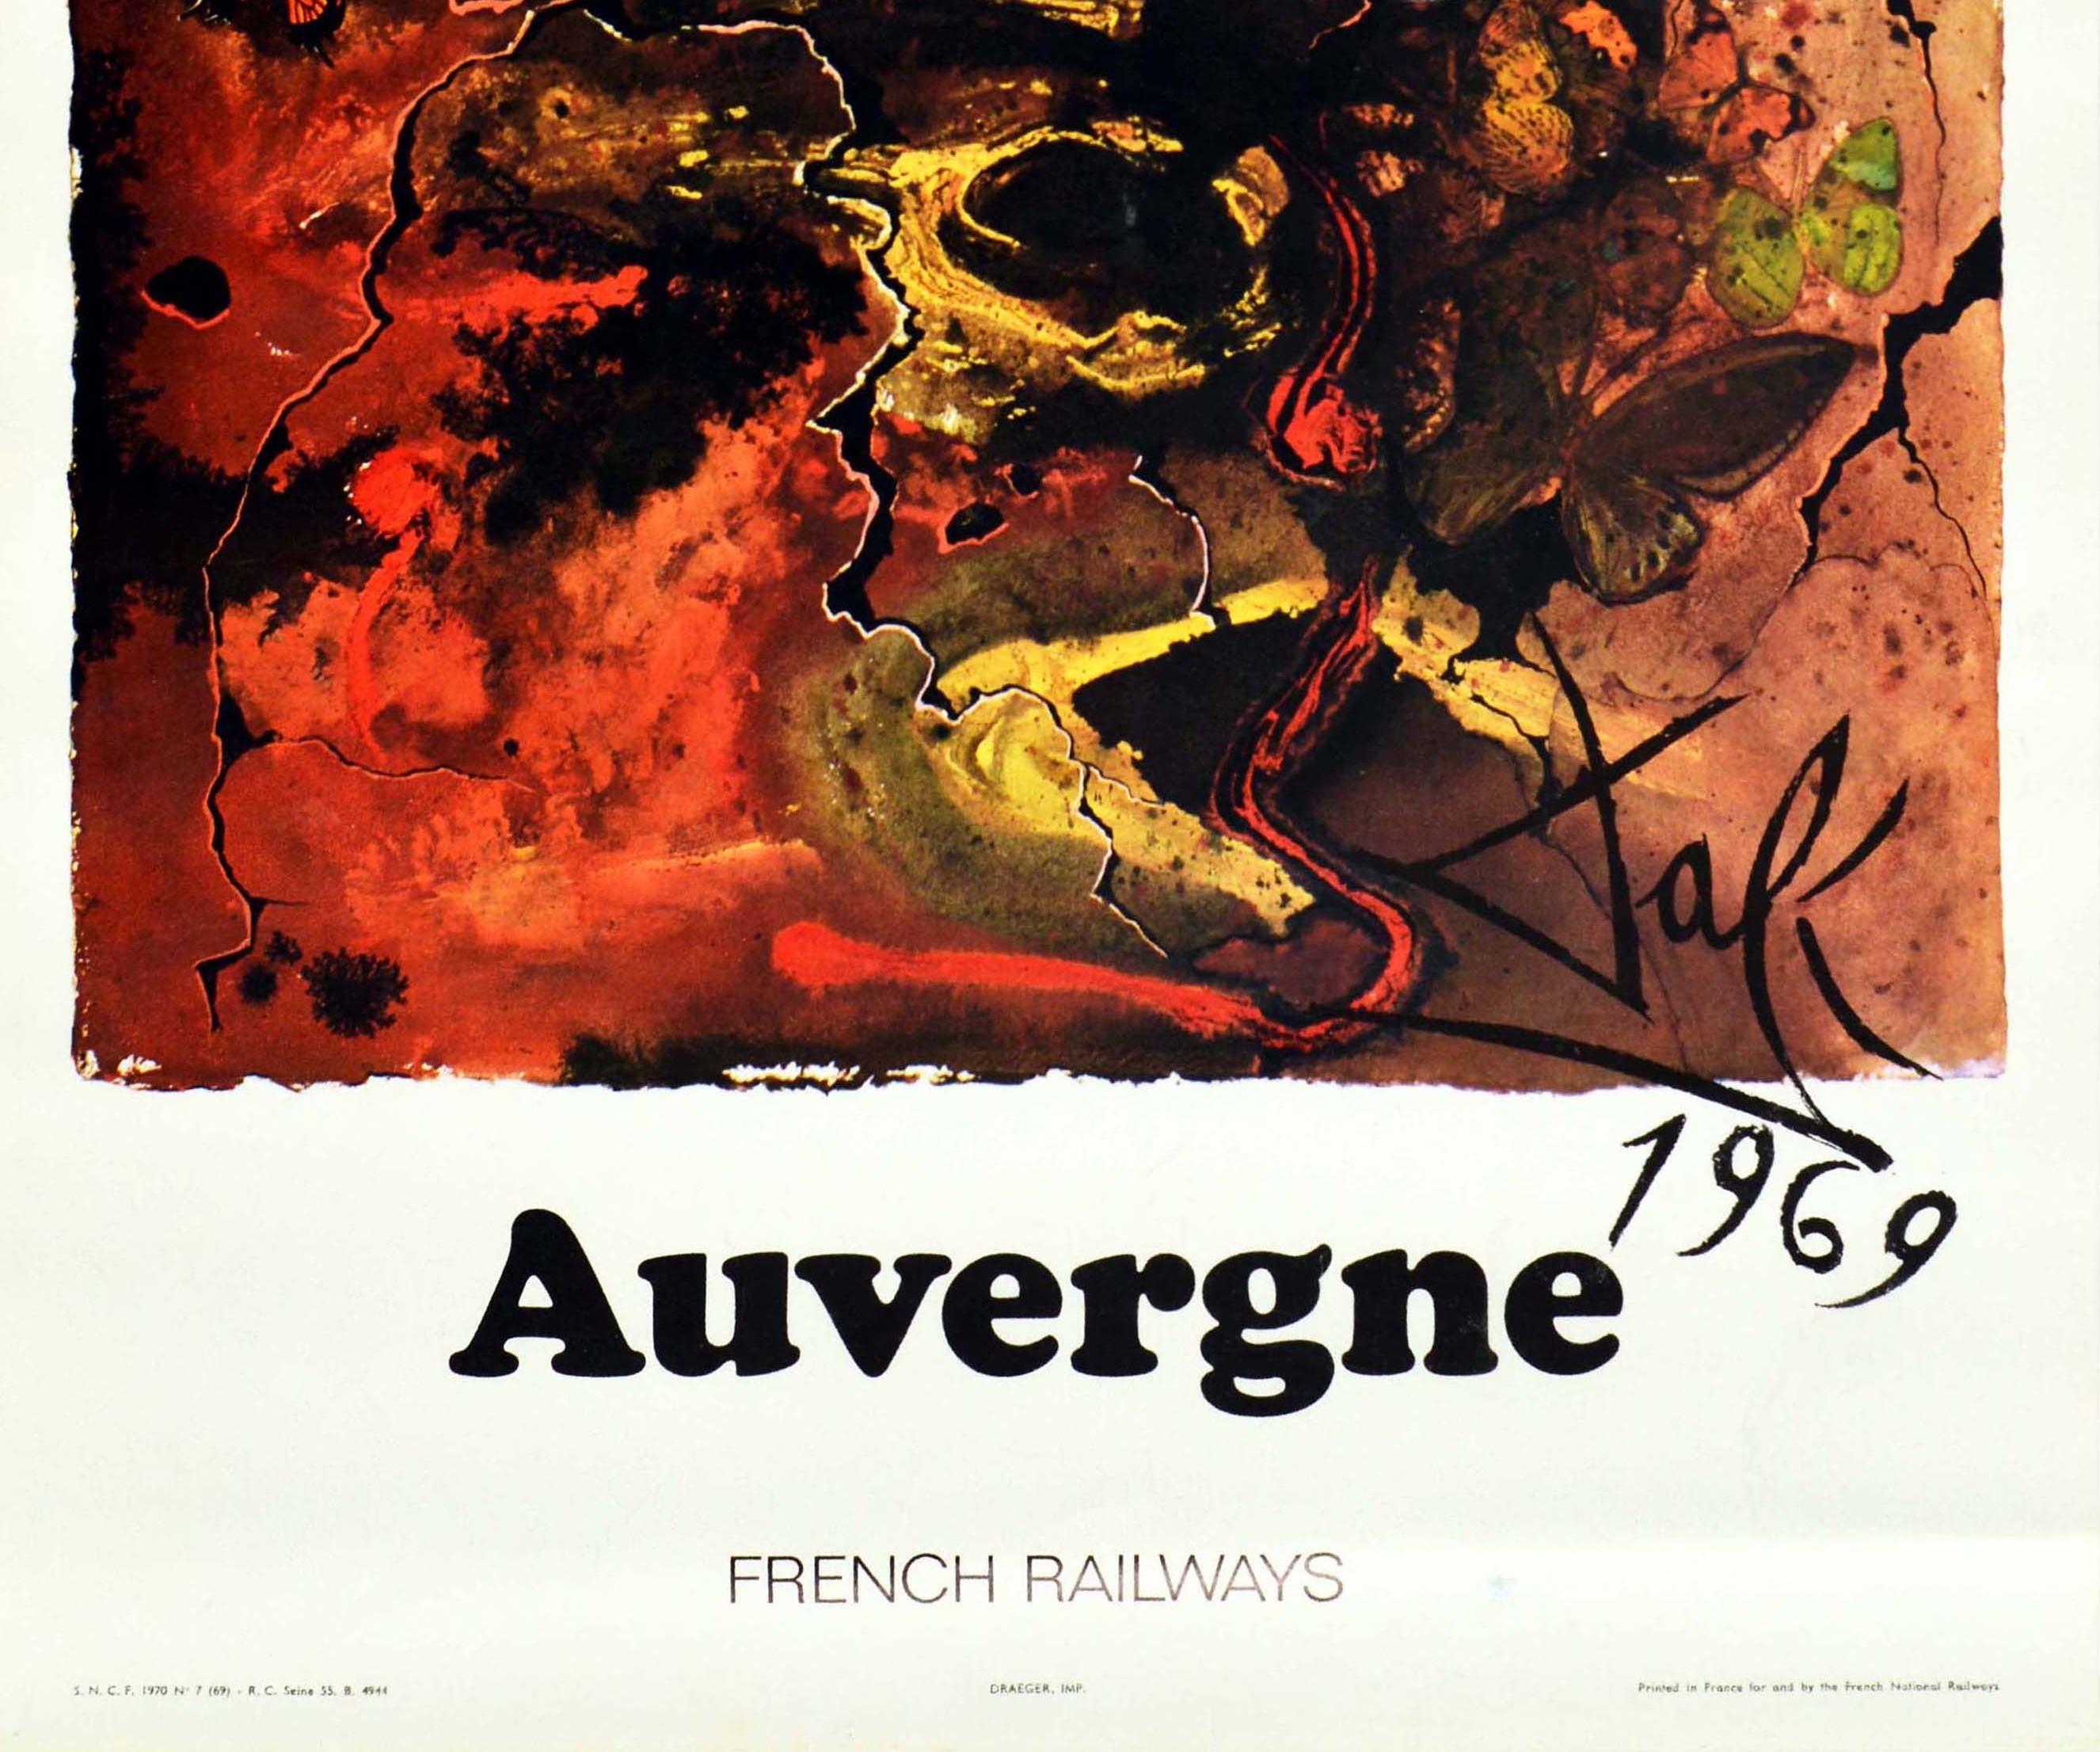 Affiche rétro originale des chemins de fer, Auvergne, par Dali pour la SNCF, Papillon, Art abstrait - Surréalisme Print par Salvador Dalí